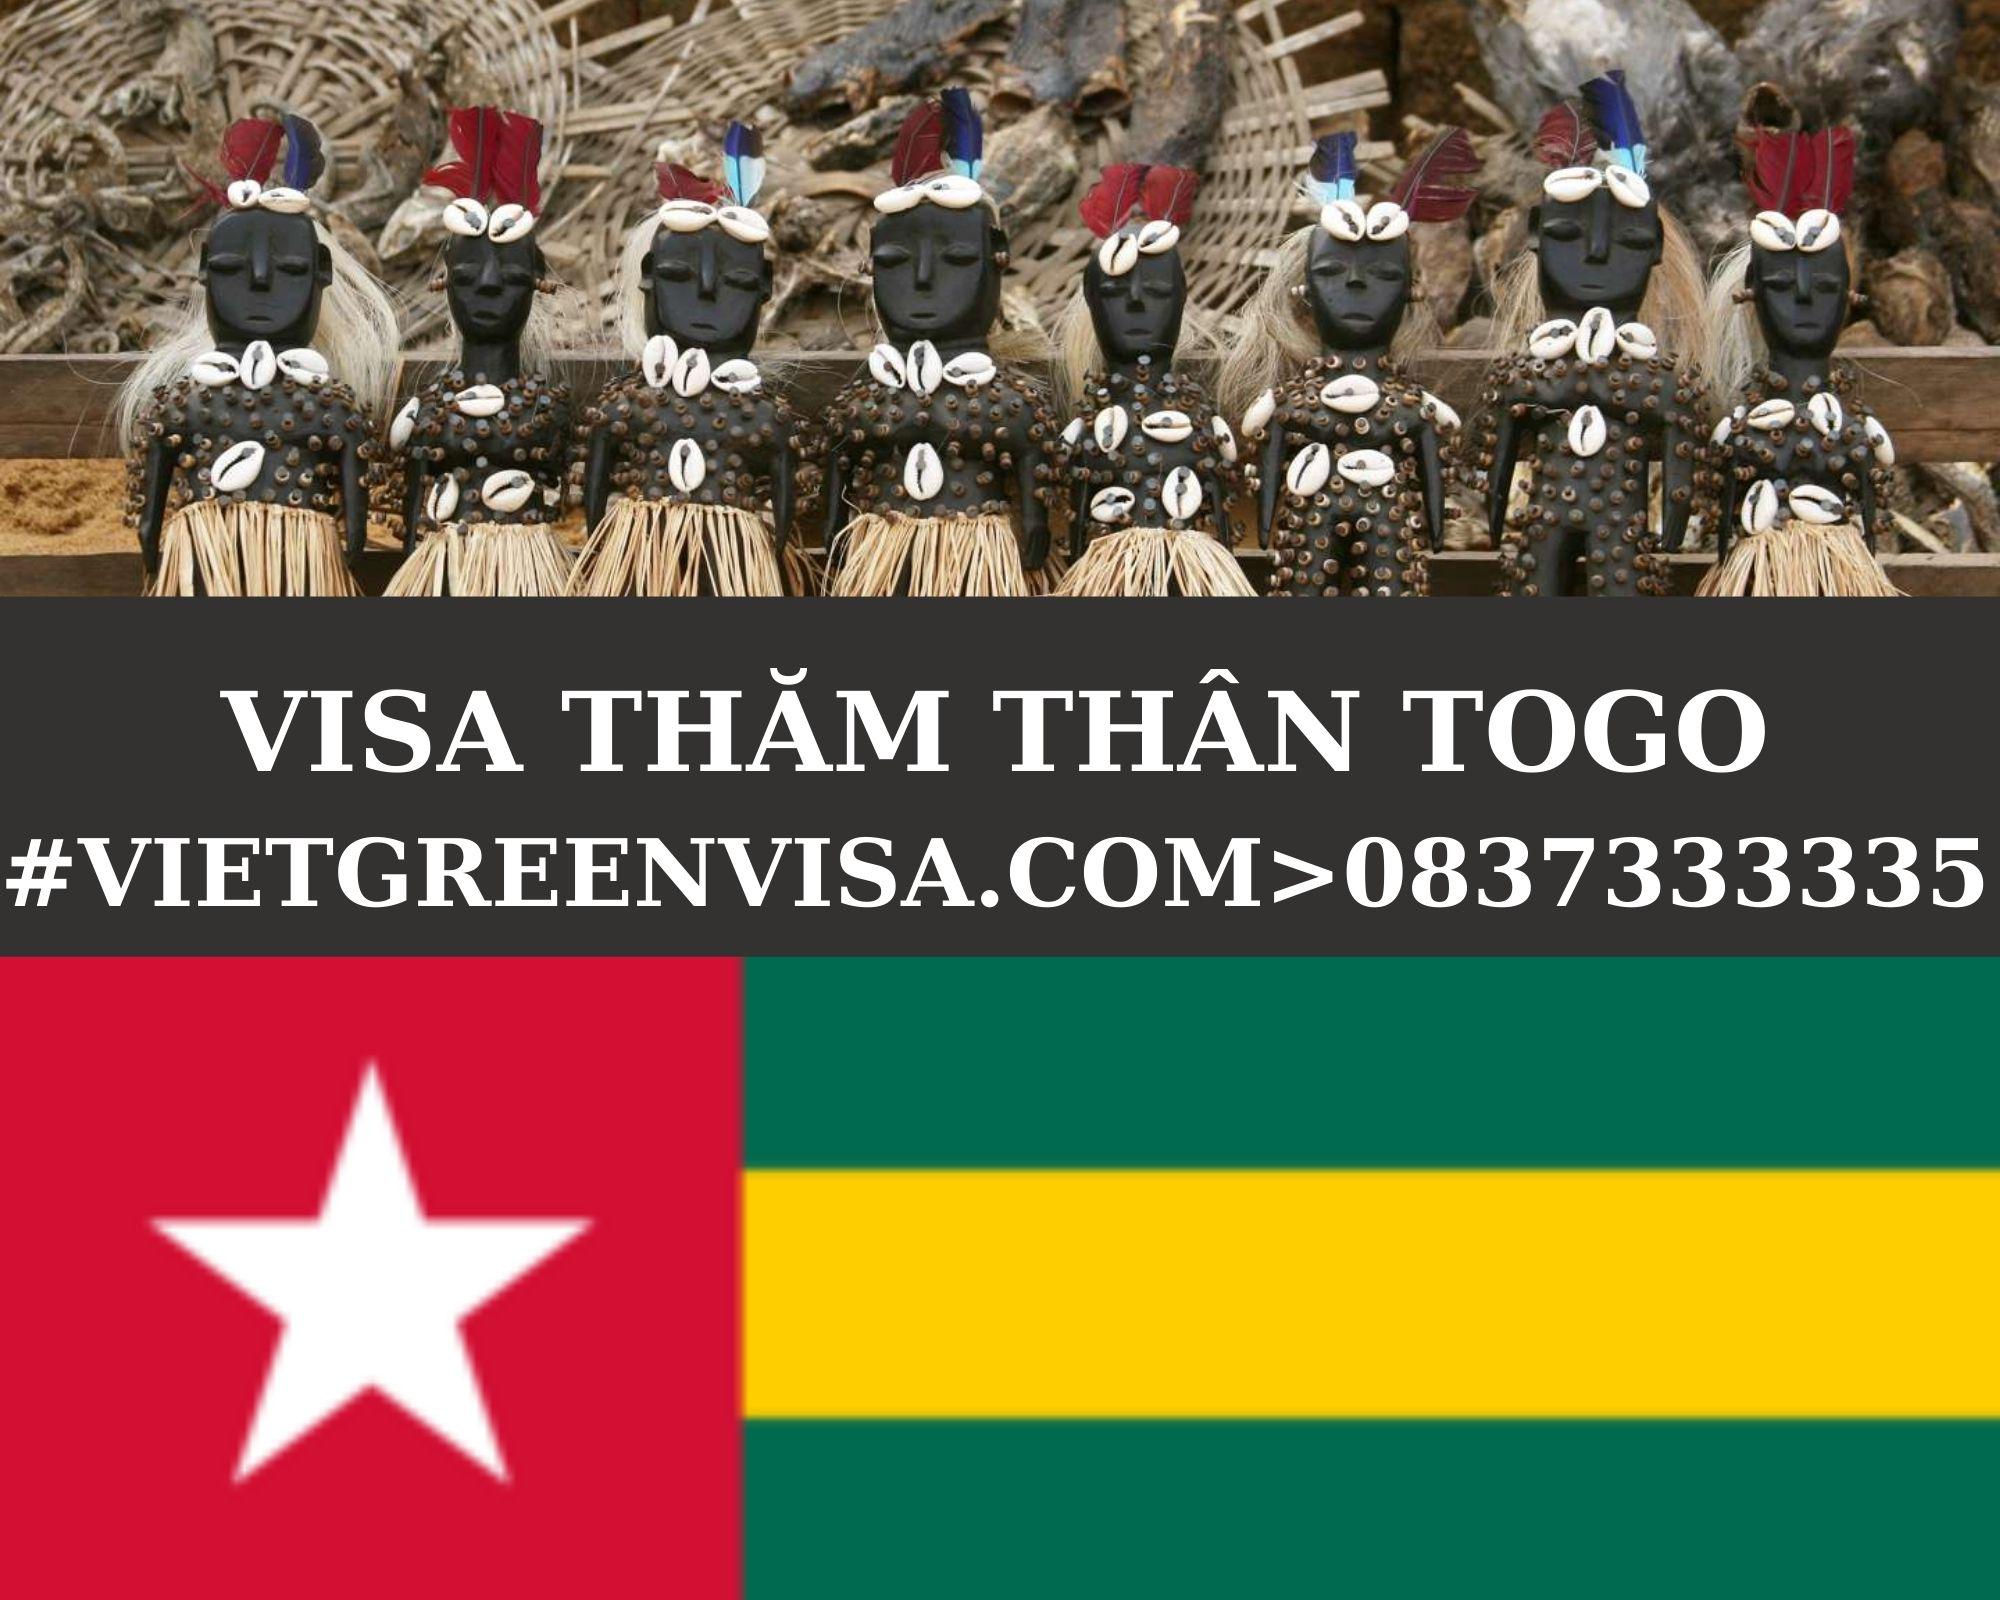 Làm Visa Togo thăm thân uy tín, nhanh chóng